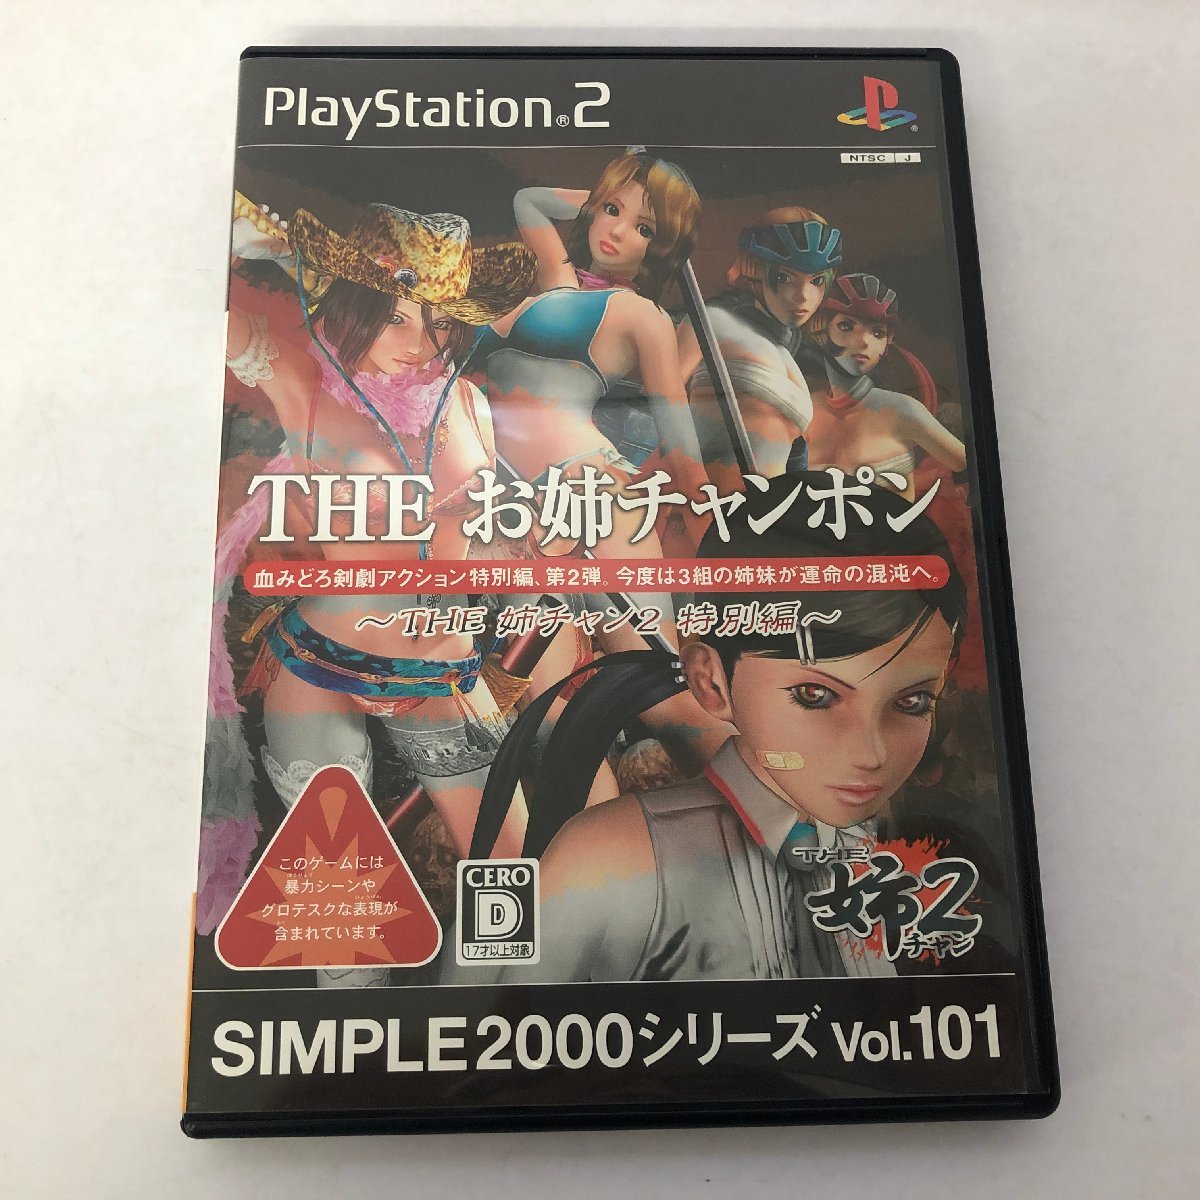 PS2 「THE お姉チャンポン THE 姉チャン2 特別編 SIMPLE2000シリーズ Vol.101」 プレイステーション2 ゲームソフト_画像1